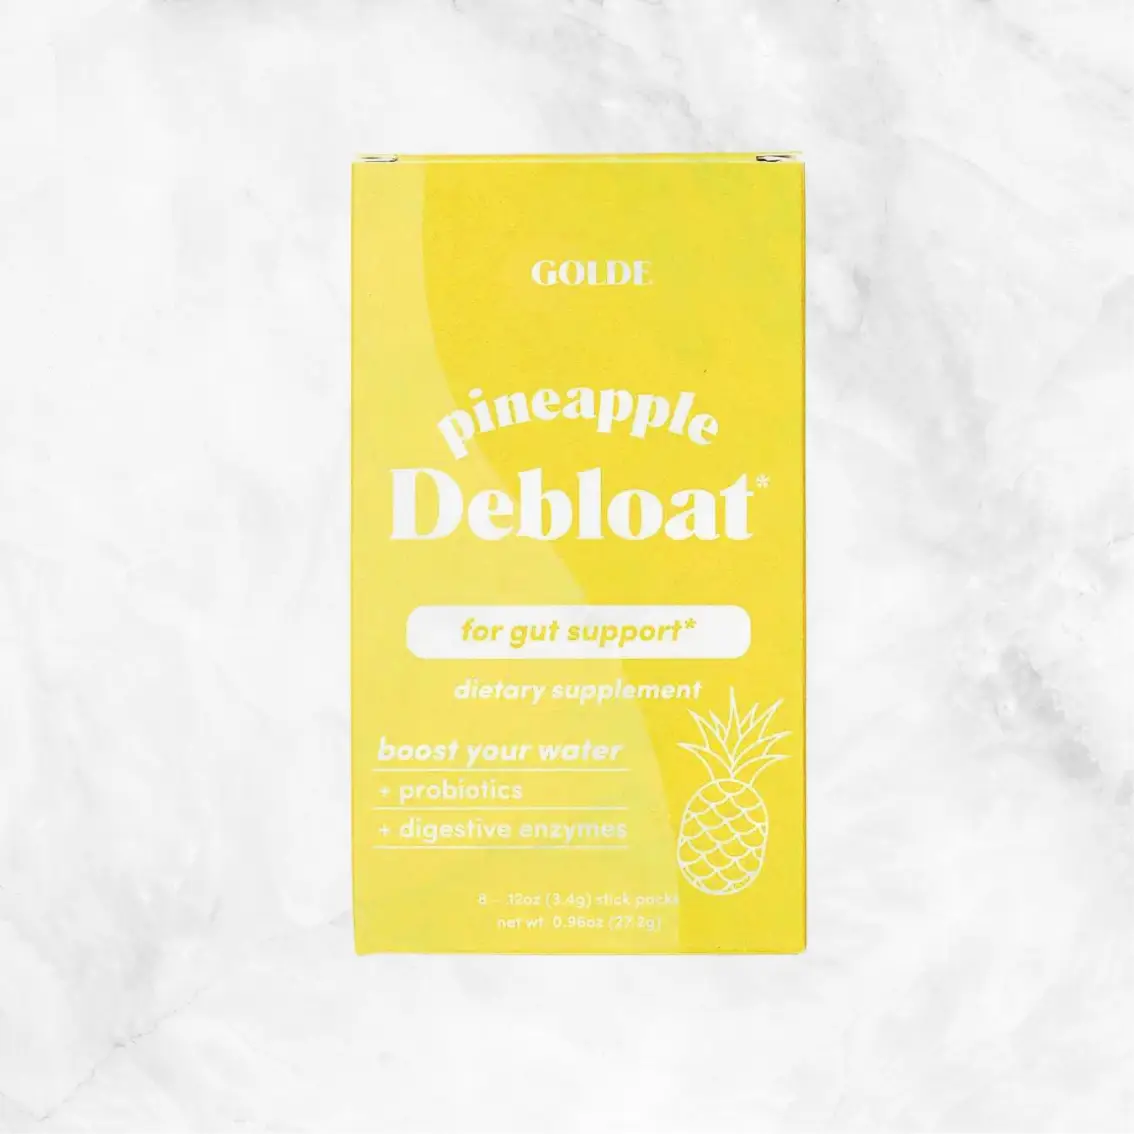  Pineapple Debloat